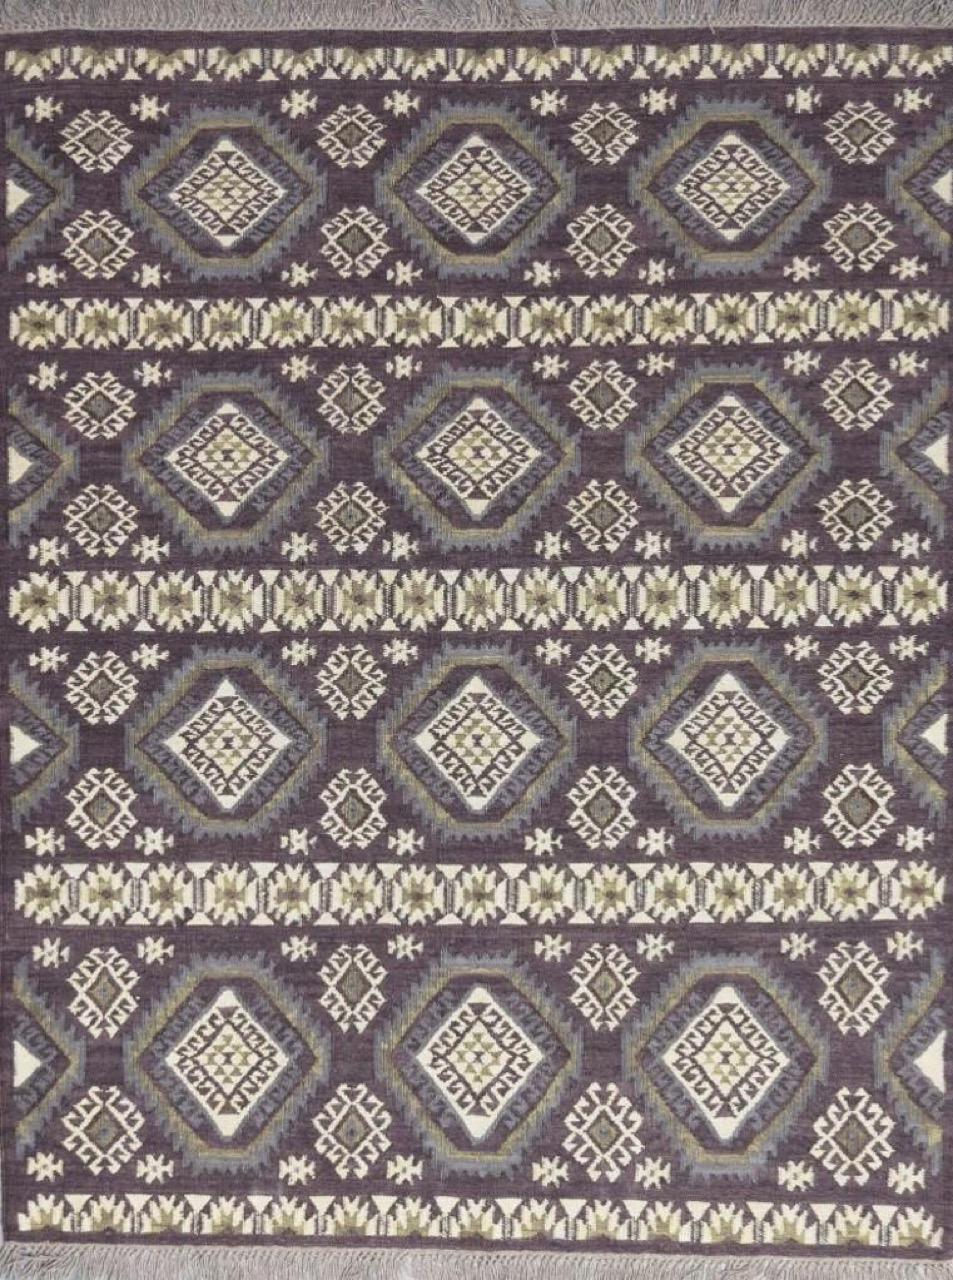 Schöner neuer Kilim mit schönem geometrischem Muster der türkischen Kilims und schönen Farben, komplett handgewebt mit Wolle auf Baumwollbasis. Größe: 170 x 240 cm, 5ft 7in x 7ft 10in.